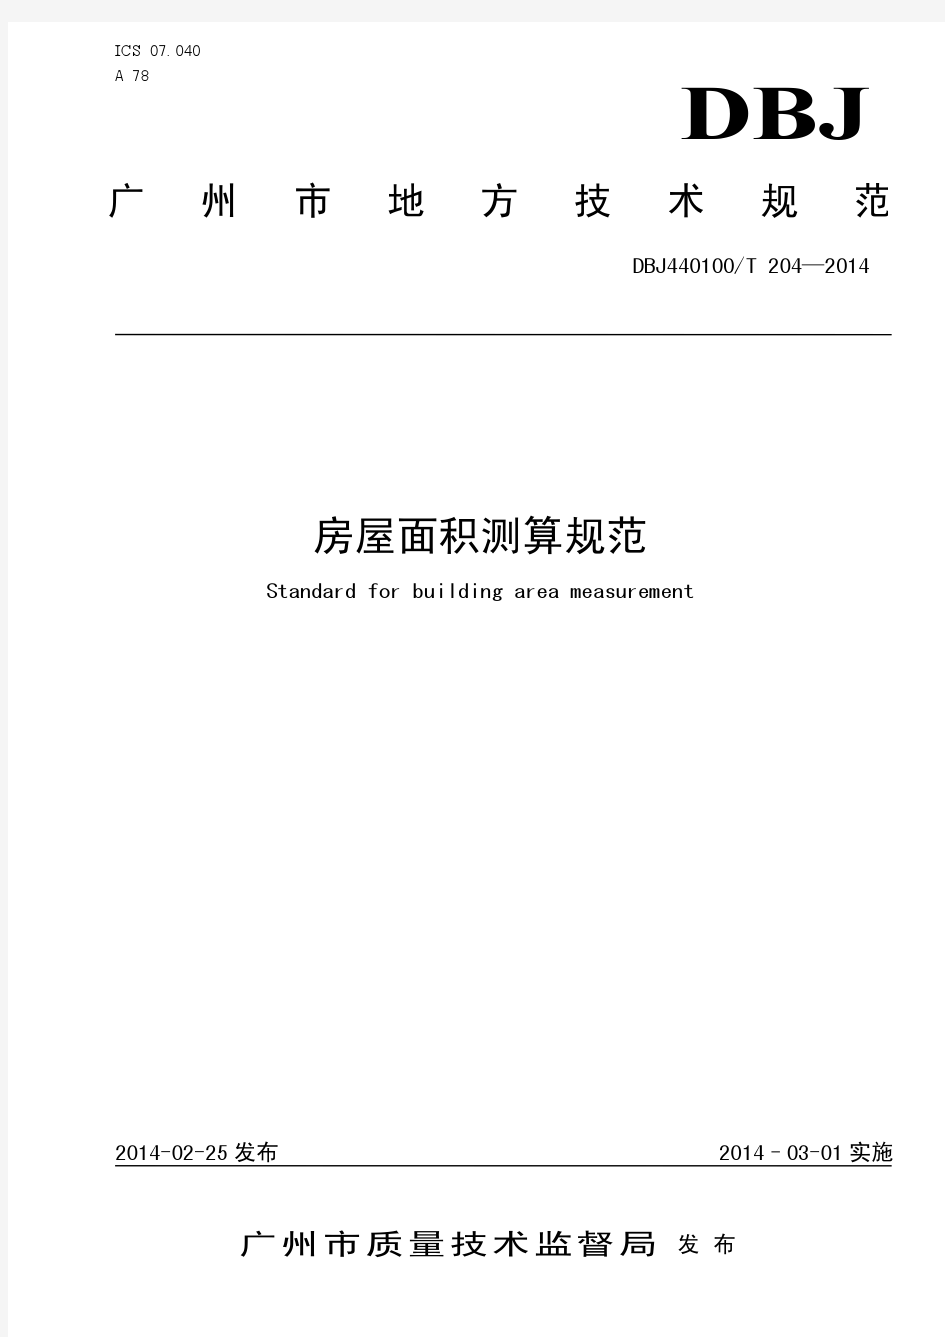 广州市房屋面积测算规范(正式发布版)(2014.3)